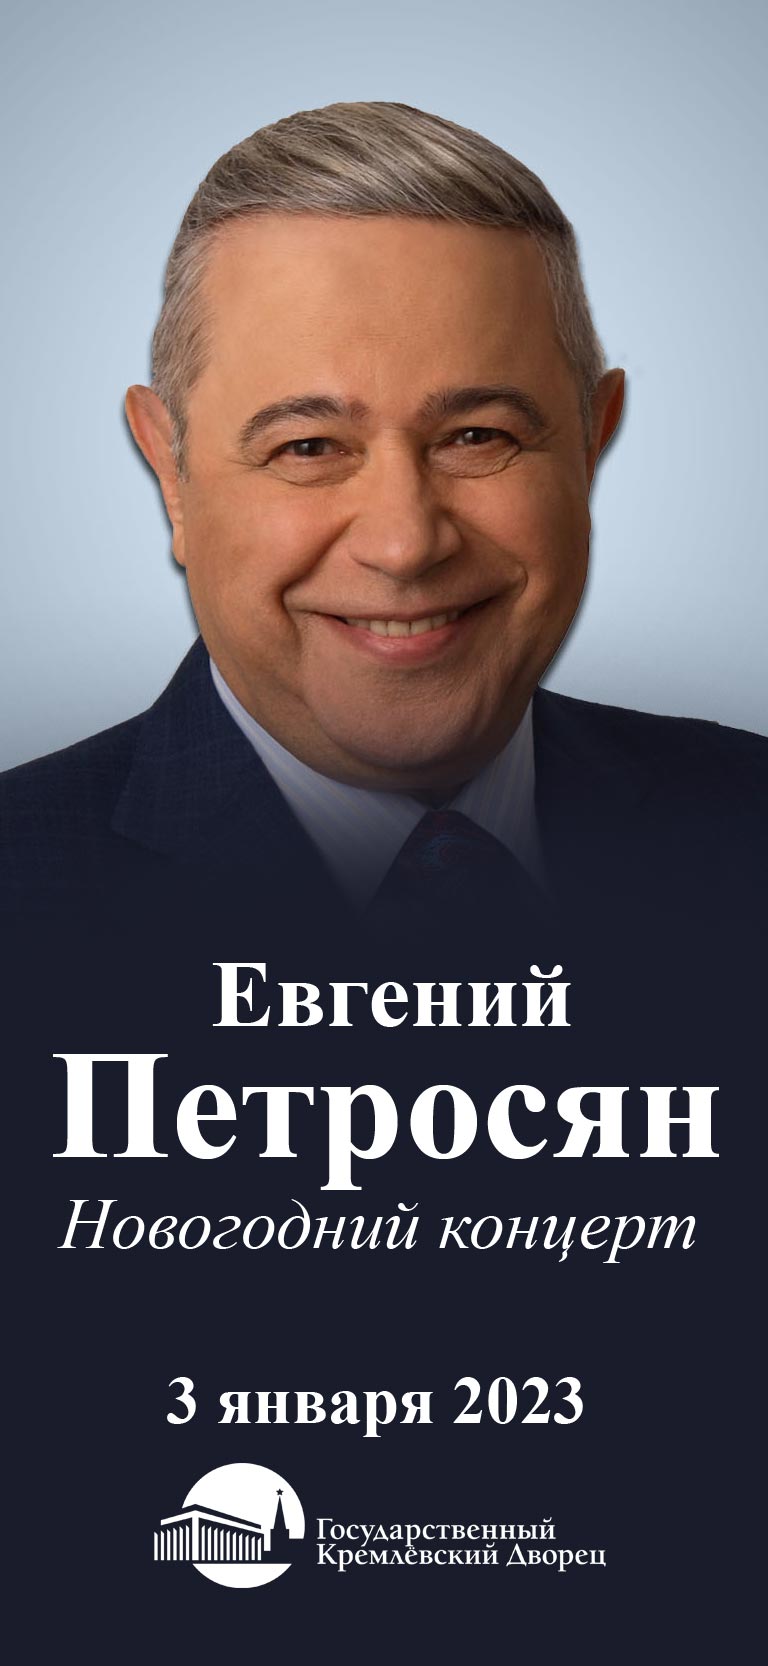 Купить Билеты на Новогодний концерт Евгения Петросяна 2023 в Государственном Кремлевском Дворце - Малый Зал